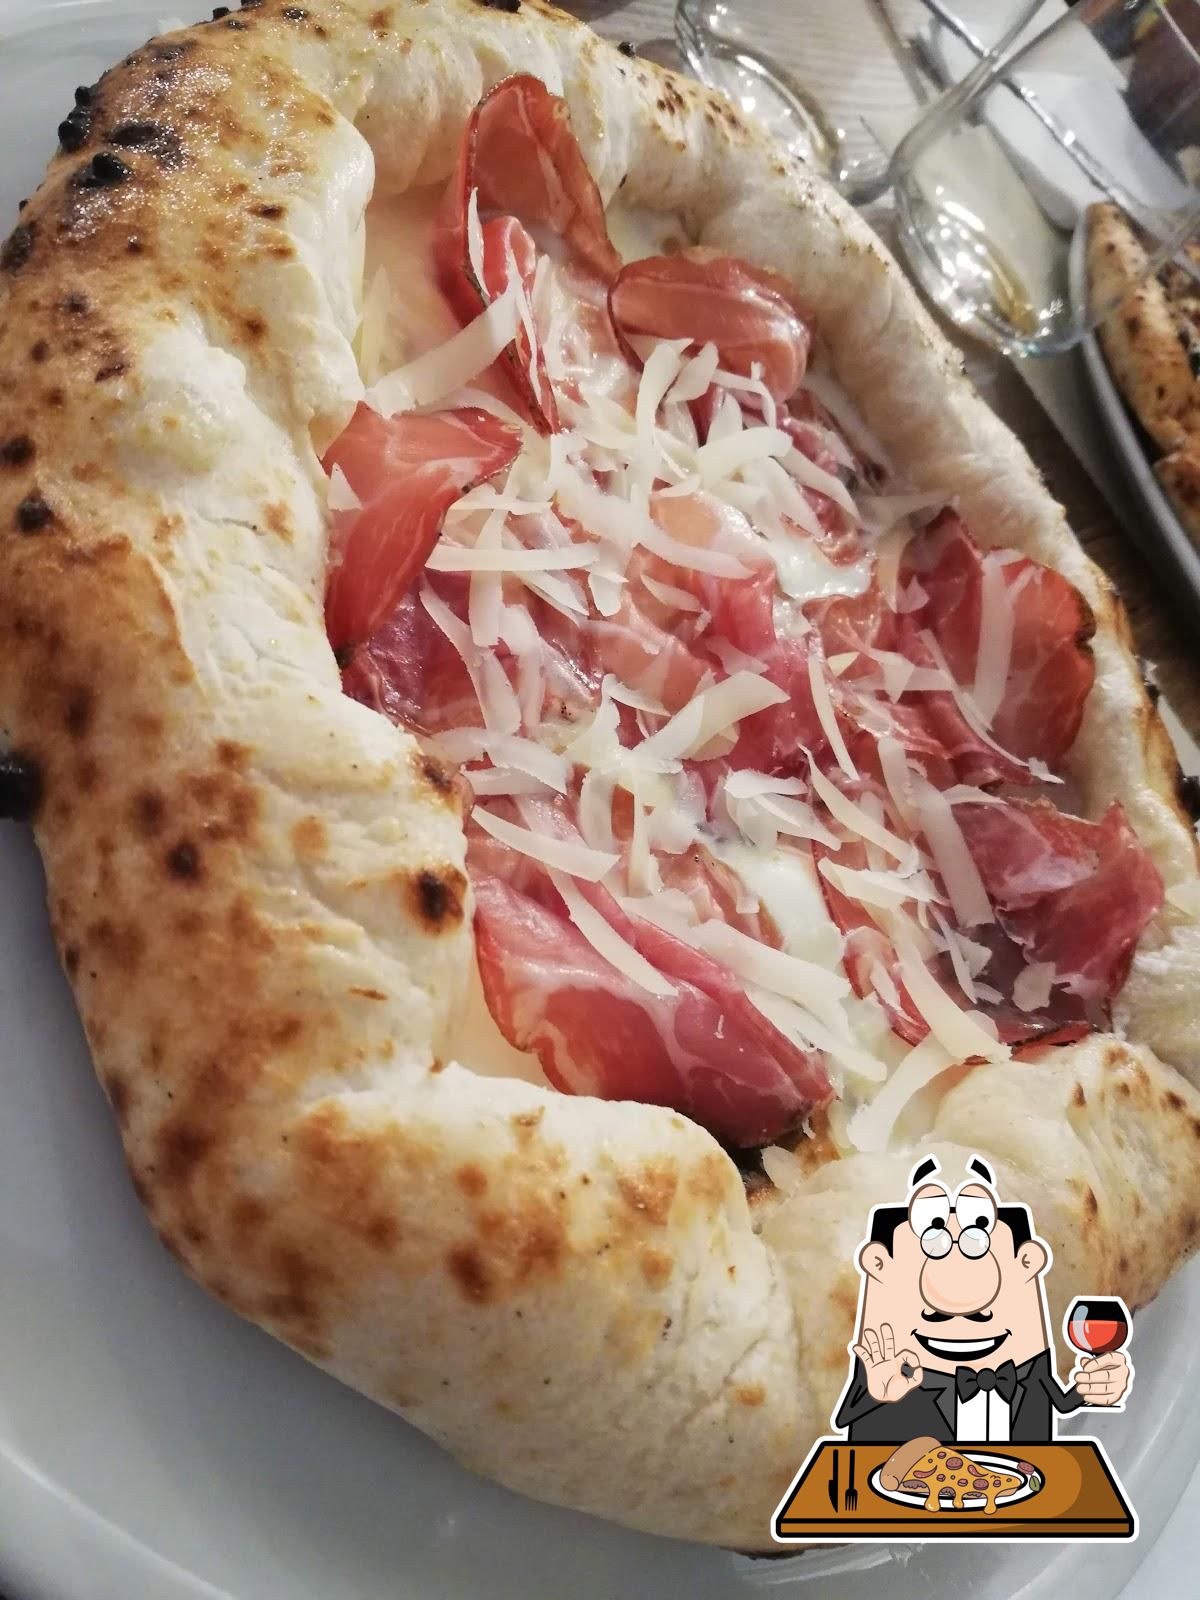 La Pala Pizzeria, Massafra - Menu e recensioni del ristorante